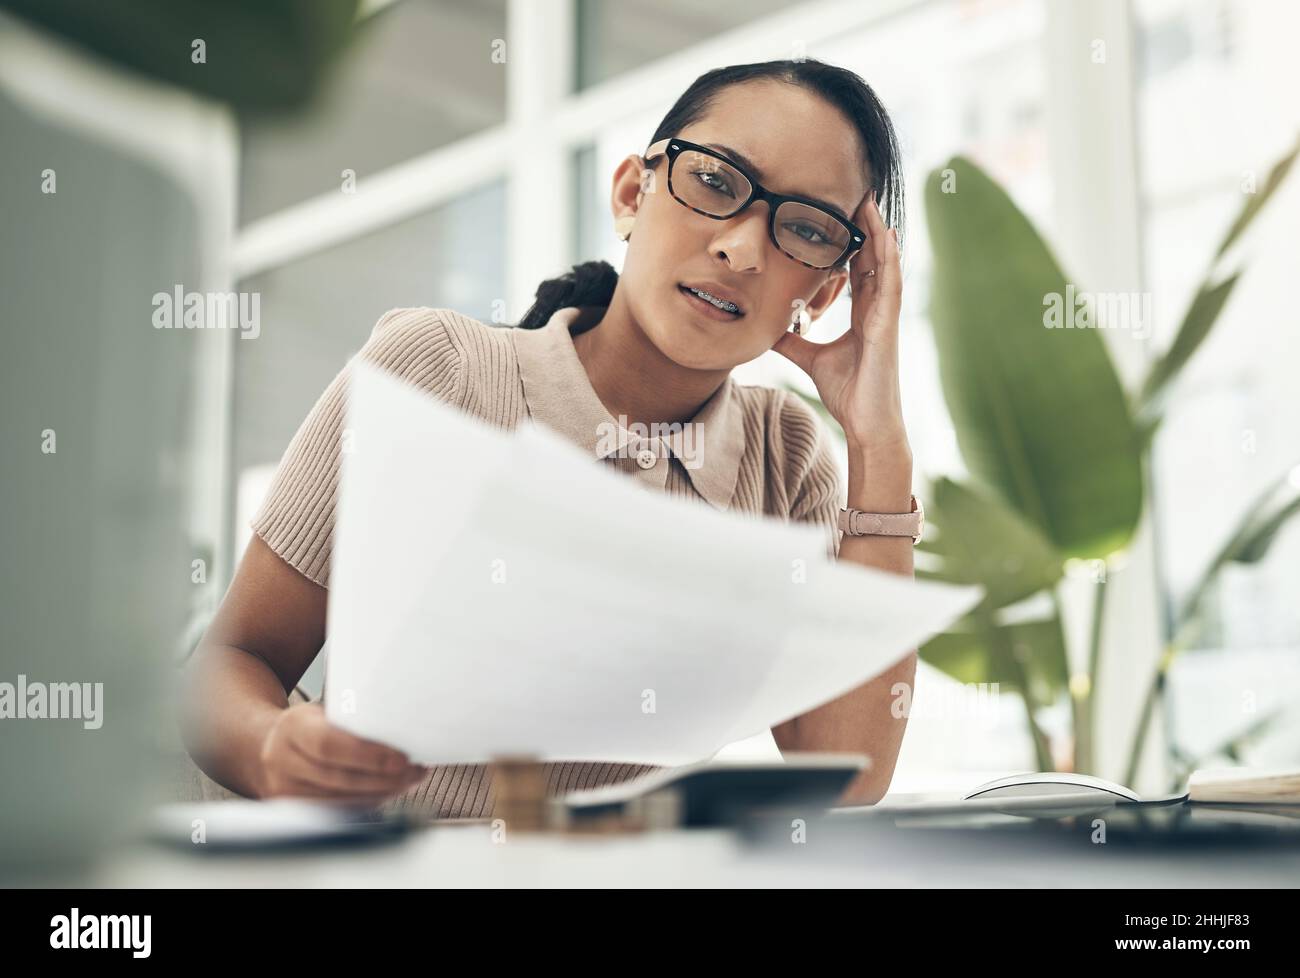 Das ist so kompliziert und verwirrend. Porträt einer jungen Geschäftsfrau, die gestresst aussieht, während sie in einem Büro die Finanzen berechnet. Stockfoto